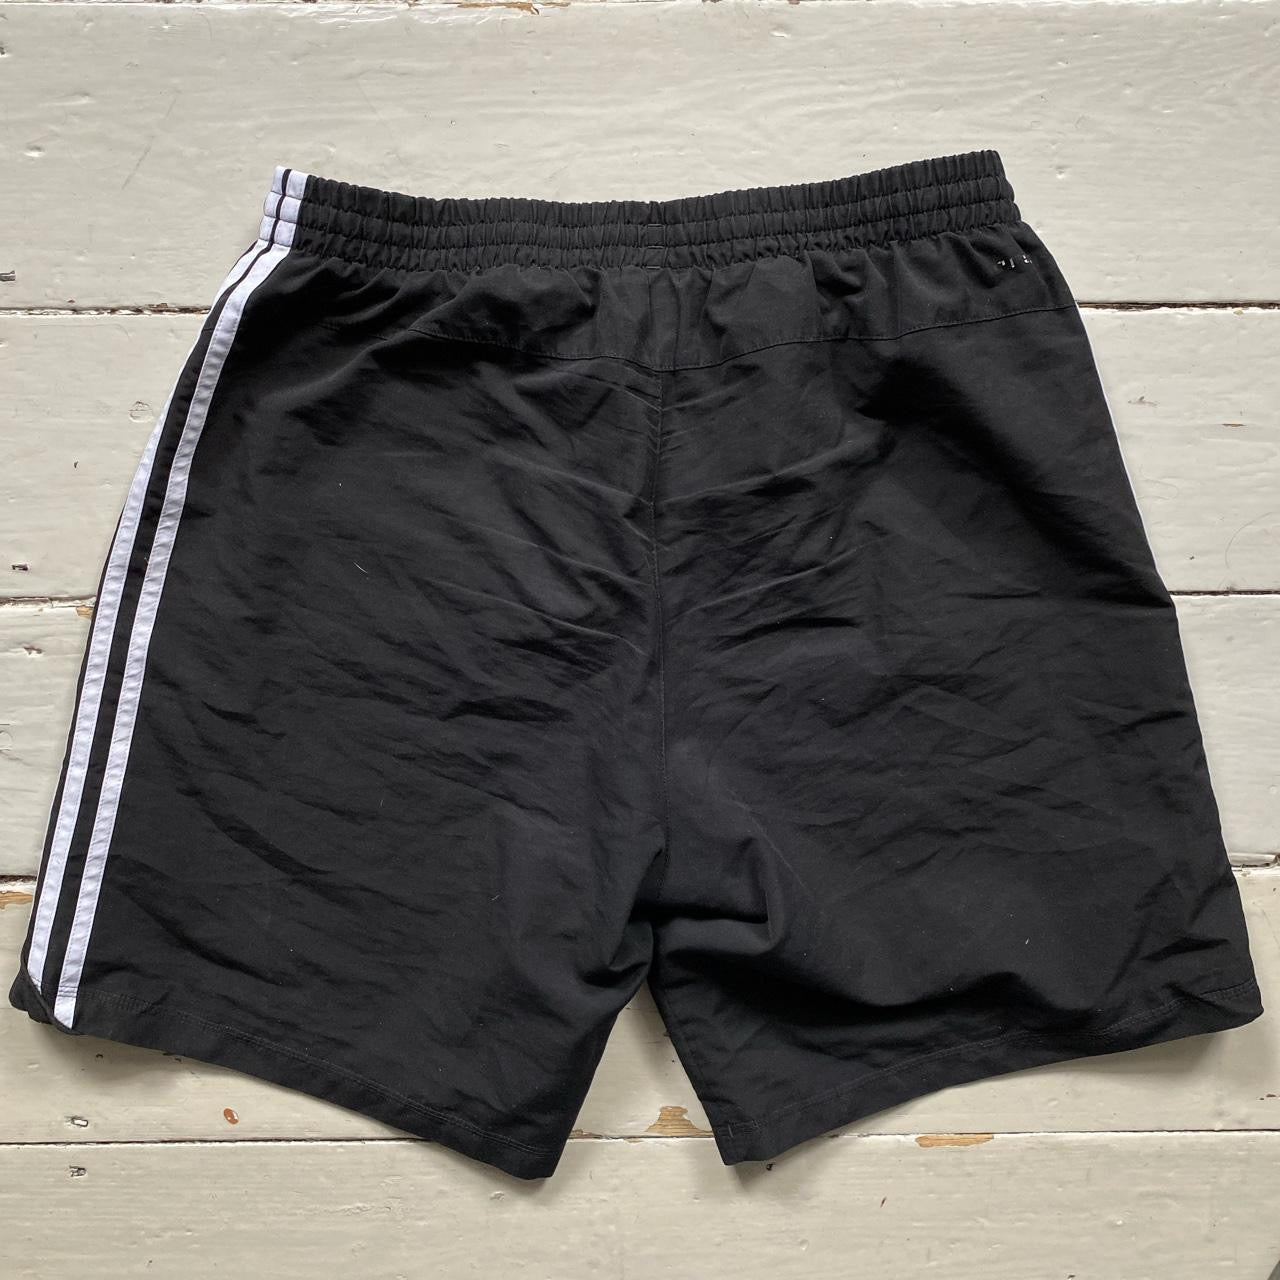 Adidas Black and White Shorts (Large)